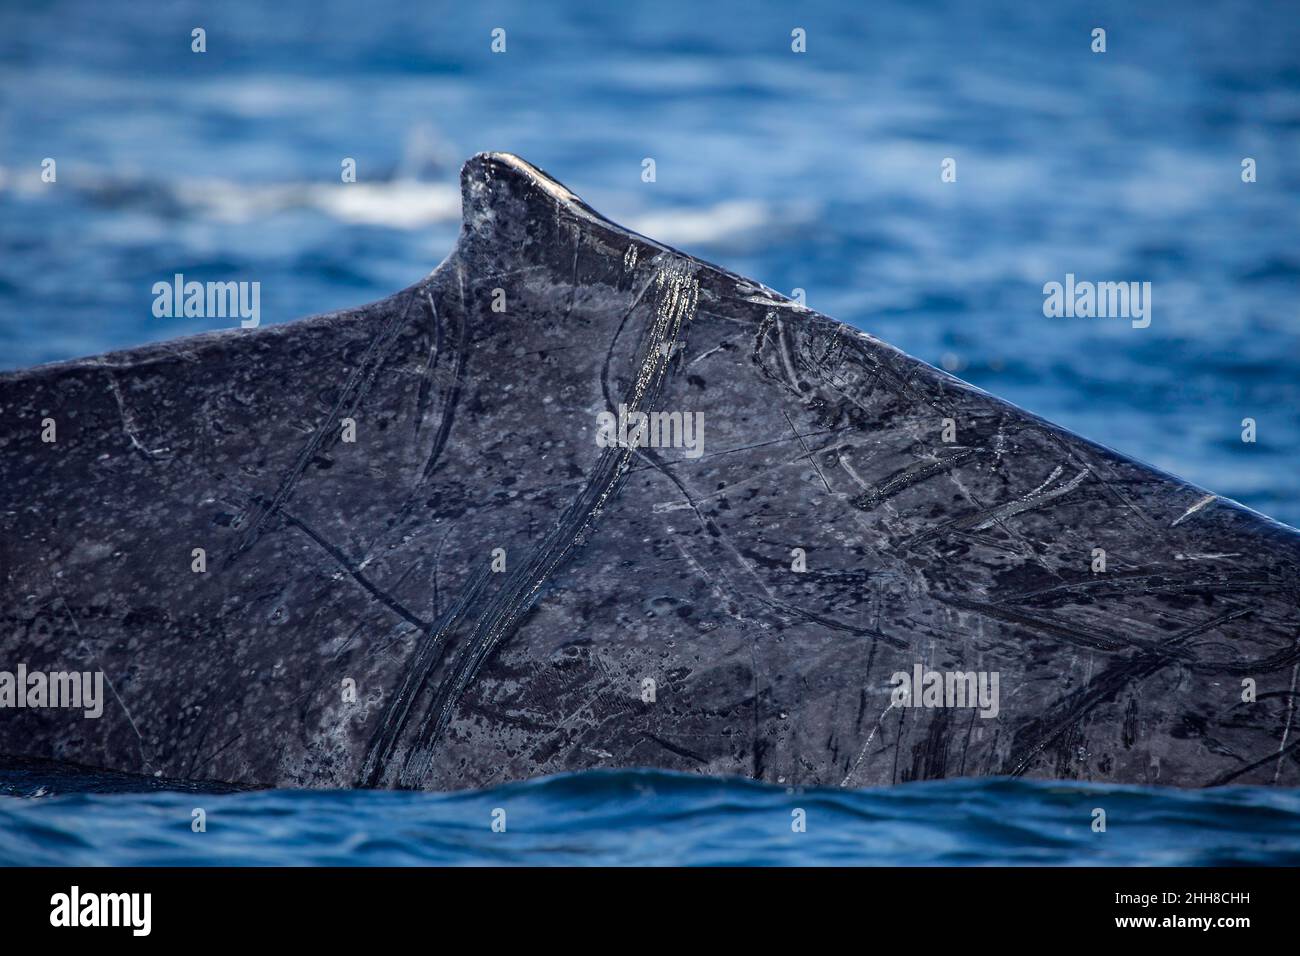 Un regard étroit sur la nageoire dorsale et les cicatrices sur le côté d'une baleine à bosse, Megaptera novaeangliae, alors qu'elle brise la surface, Hawaï. Banque D'Images